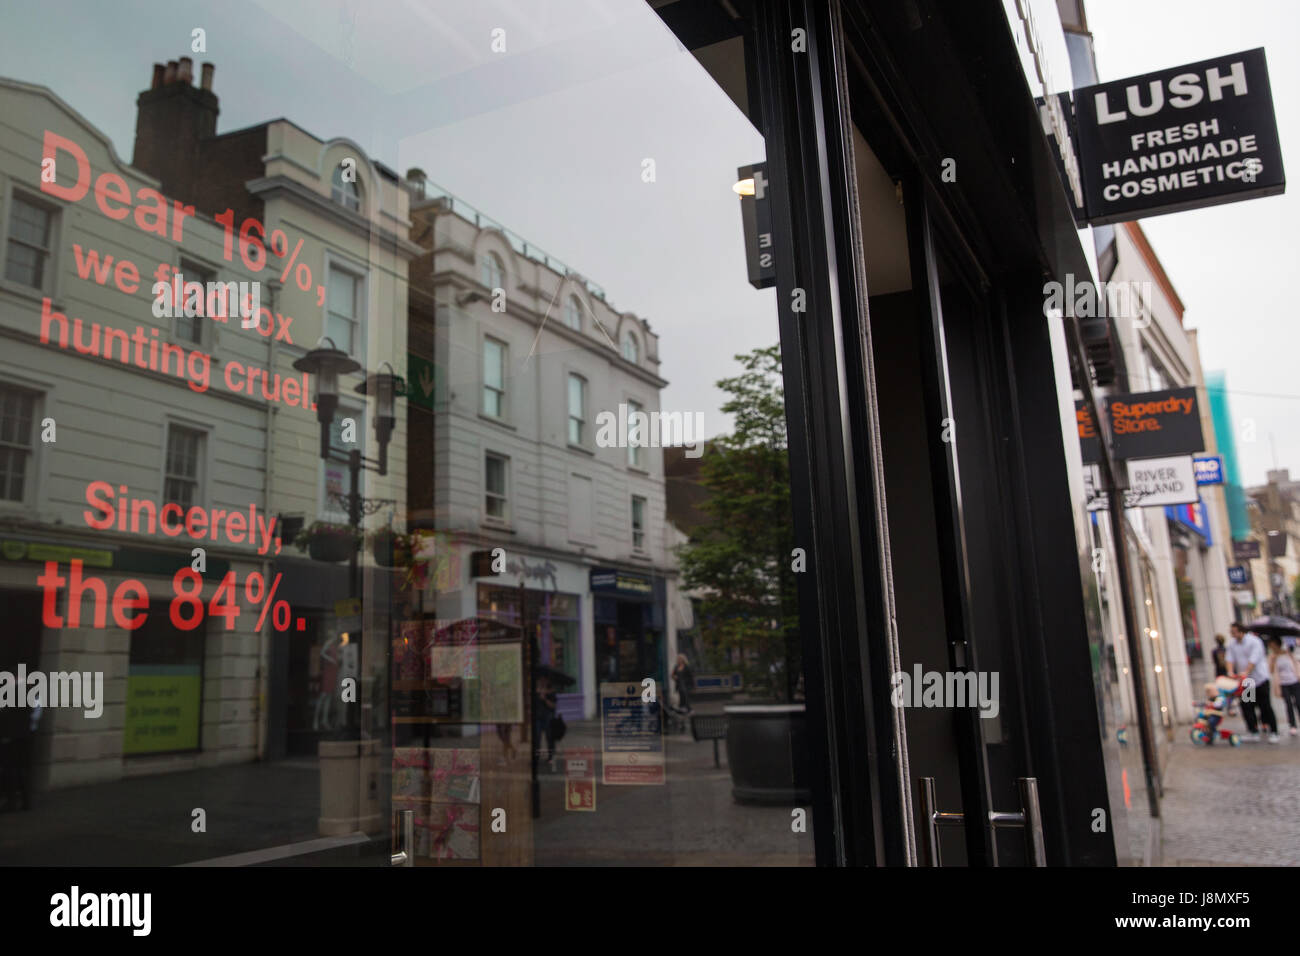 Windsor, Royaume-Uni. Un écran et à l'intérieur de la fenêtre d'un magasin  Lush est utilisé pour faire campagne contre la chasse au renard. Texte sur  l'écran indique que 84 % des personnes